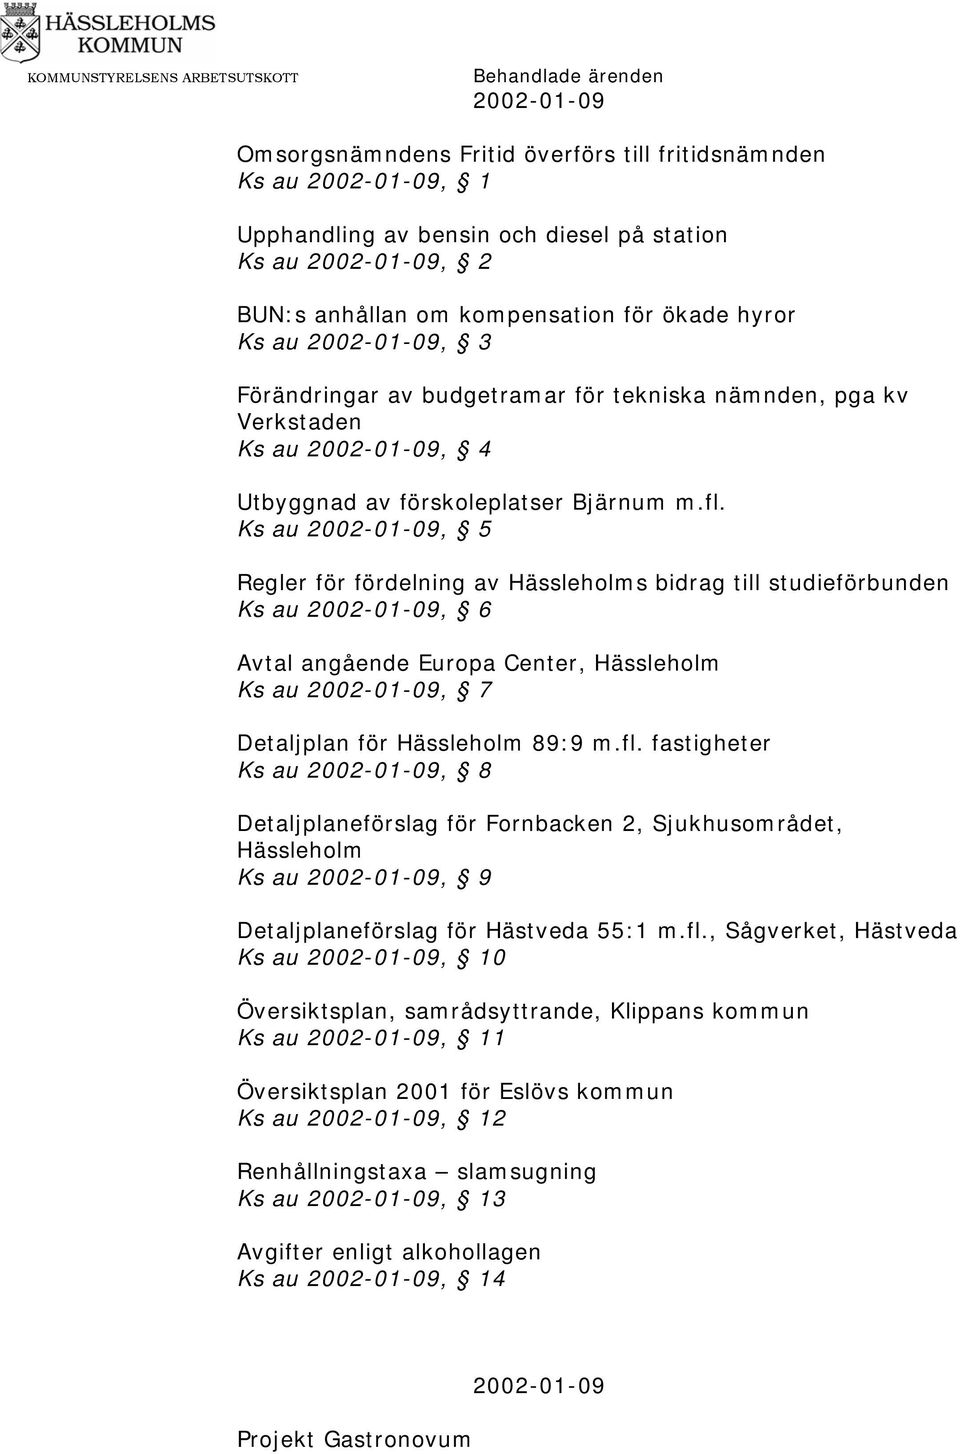 Ks au 2002-01-09, 5 Regler för fördelning av Hässleholms bidrag till studieförbunden Ks au 2002-01-09, 6 Avtal angående Europa Center, Hässleholm Ks au 2002-01-09, 7 Detaljplan för Hässleholm 89:9 m.